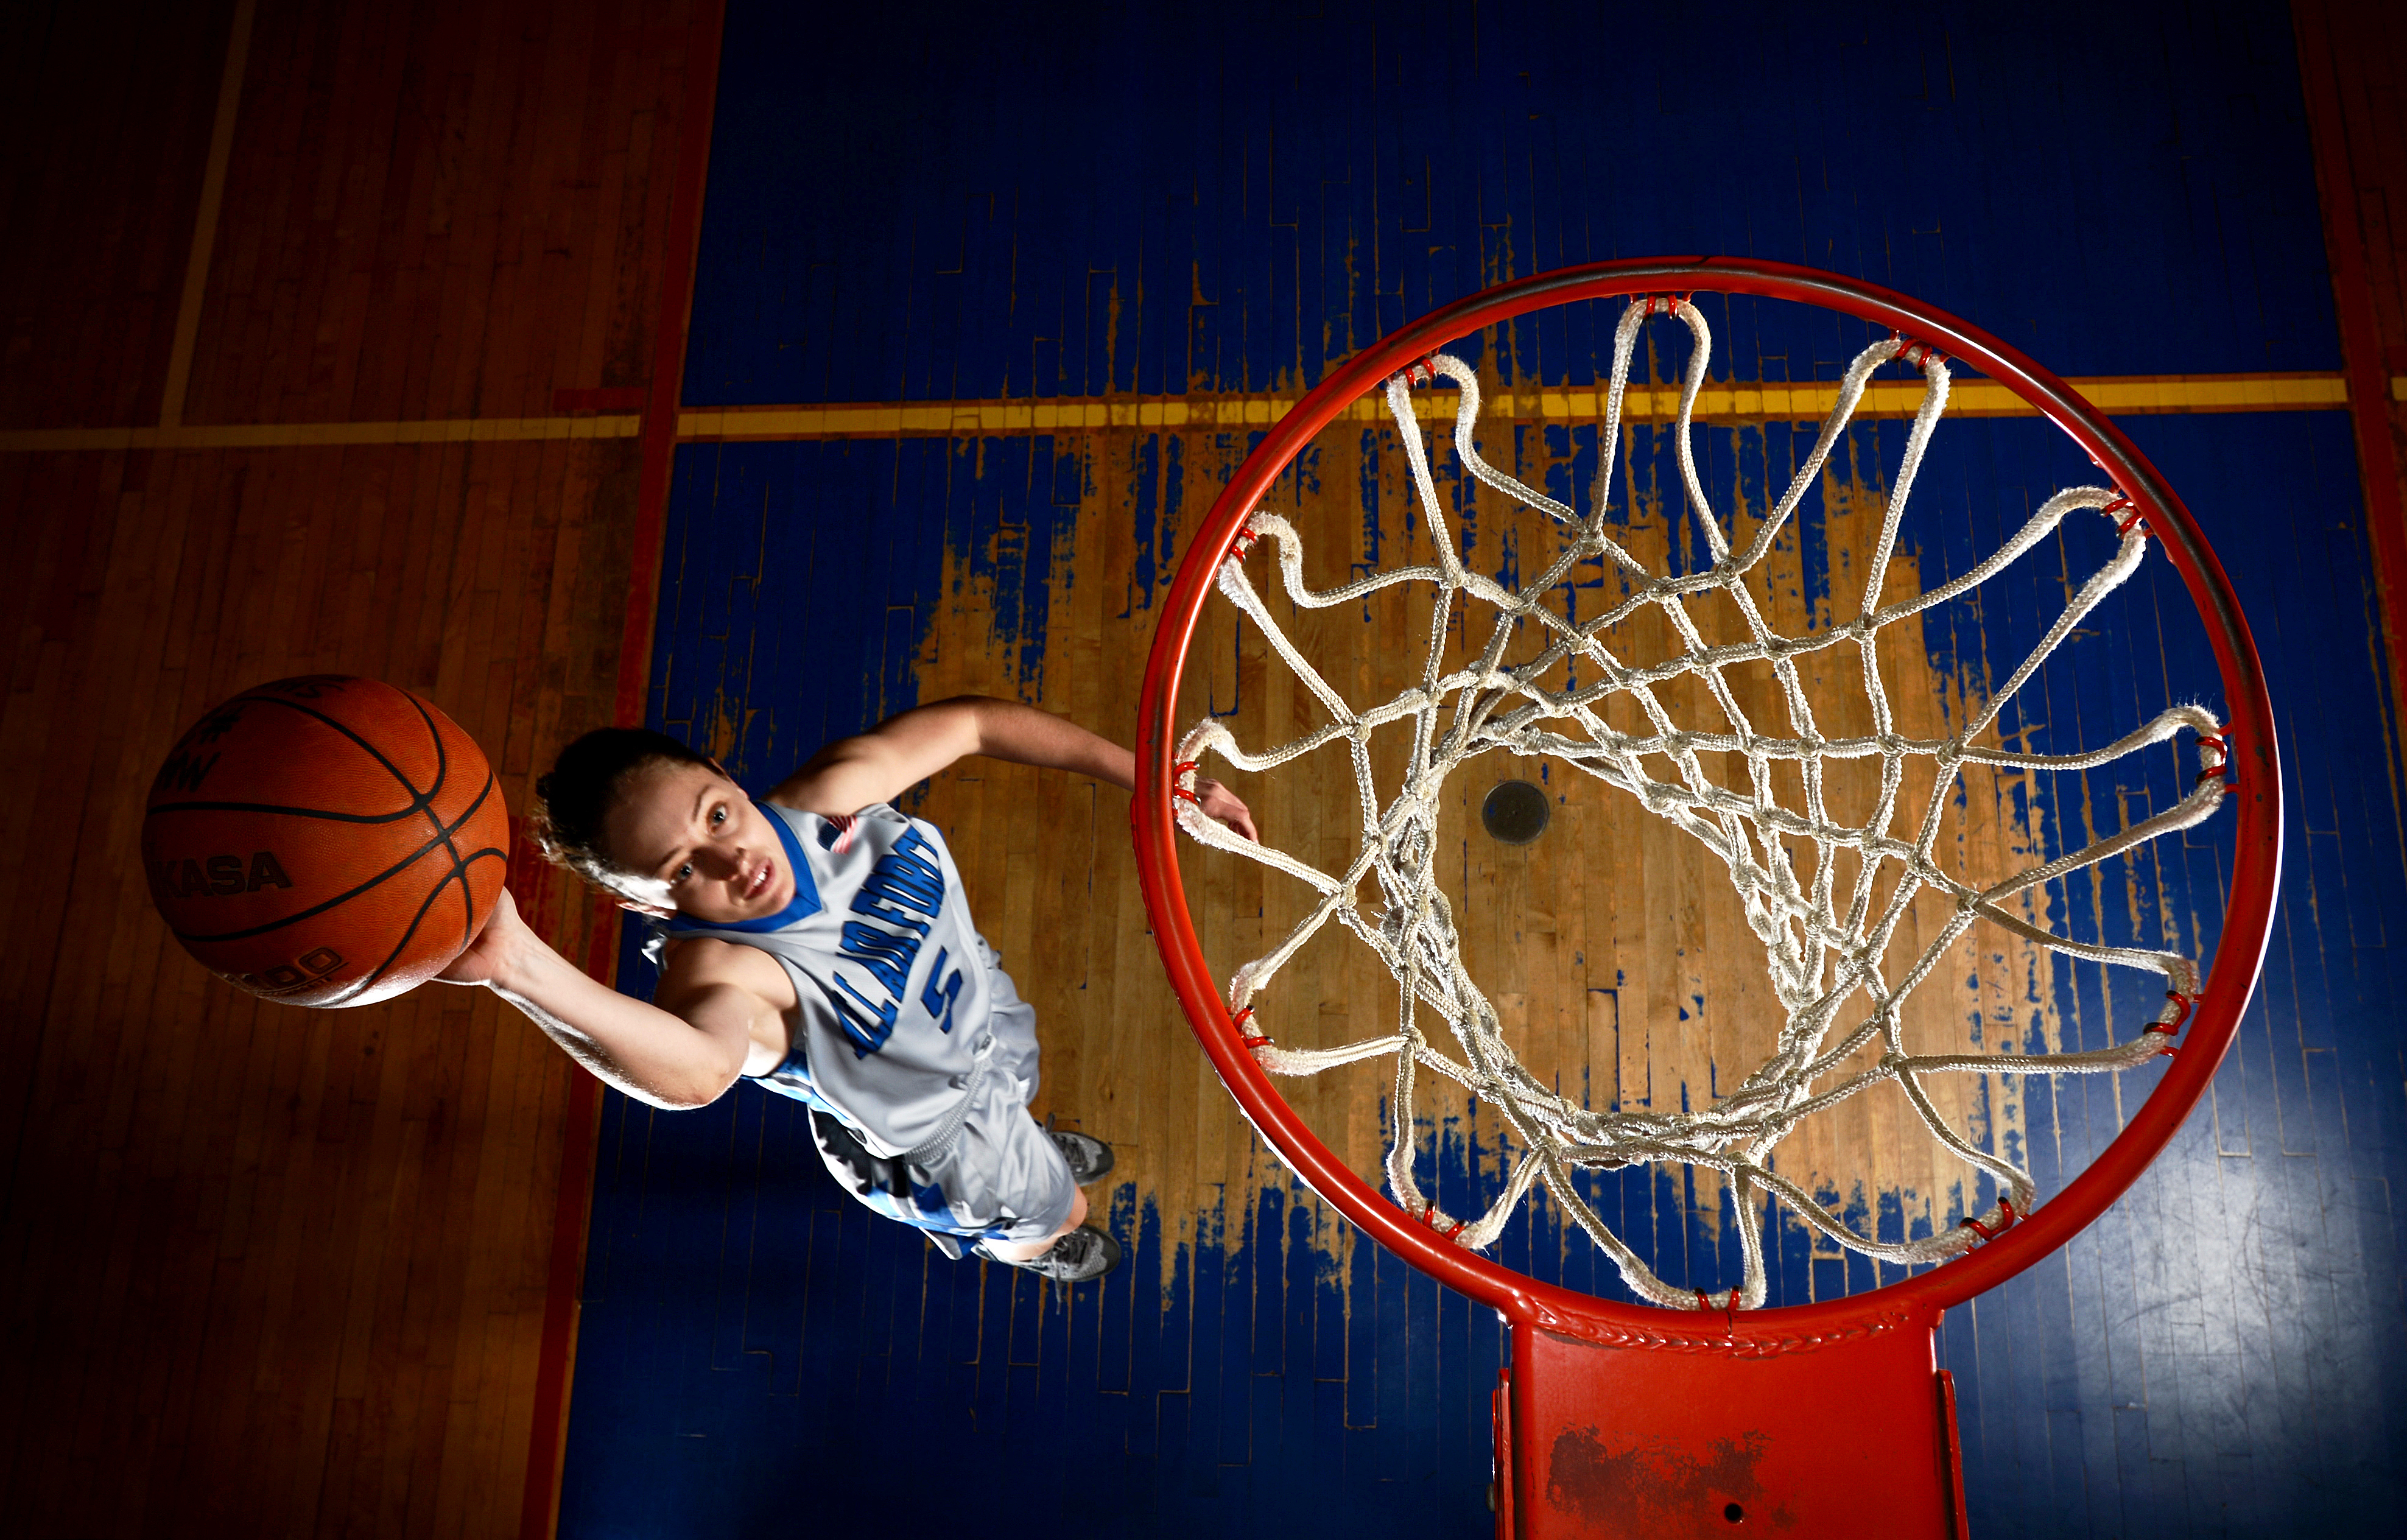 Спортивный мяч в баскетболе. Баскетбольный мяч и кольцо. Баскетбольное кольцо. Спорт баскетбол. Баскетбольный мяч на площадке.